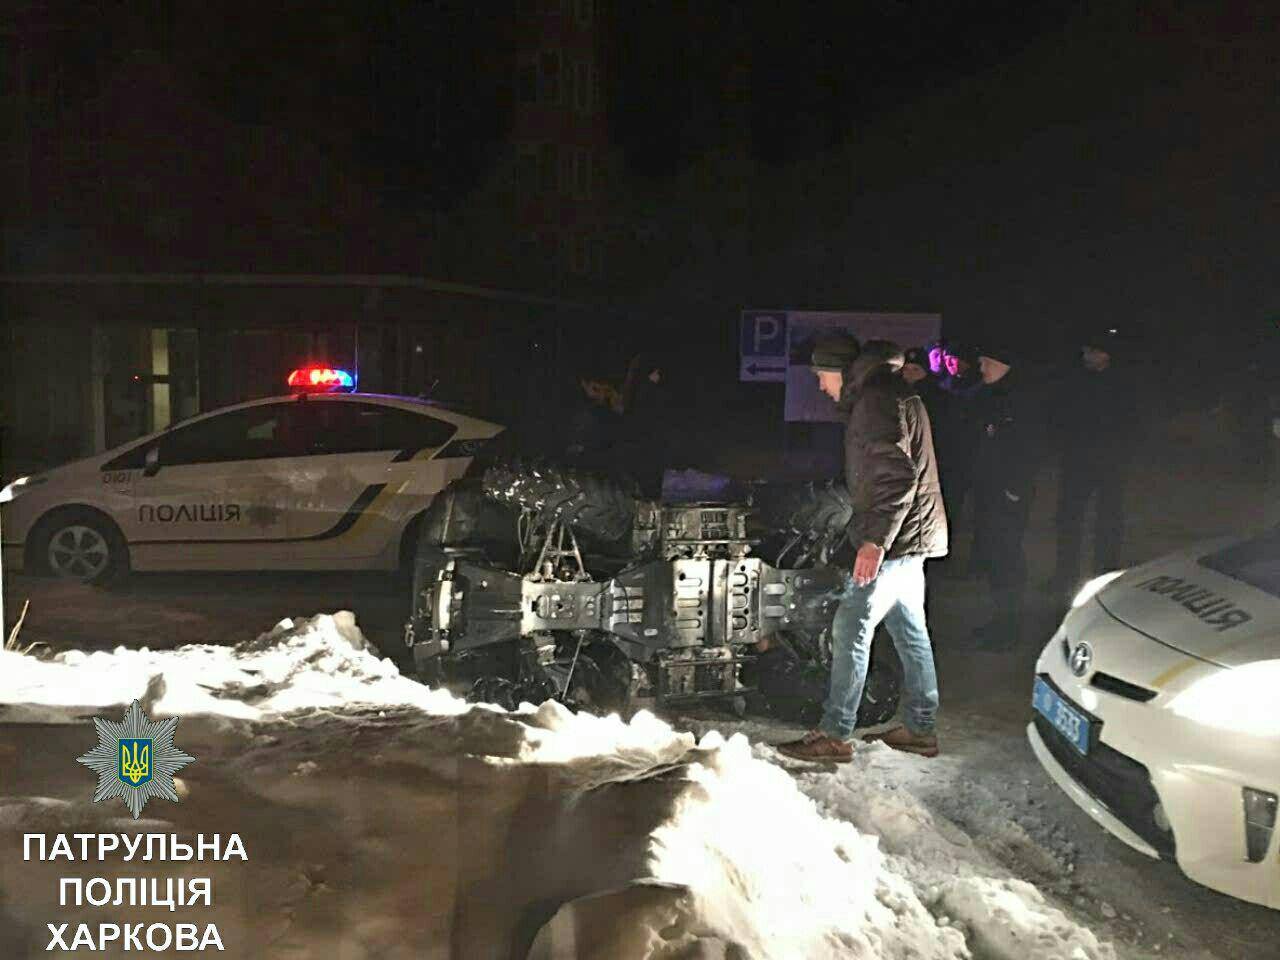 Новость - События - Снег помешал: в Харькове пьяный водитель квадроцикла пытался сбежать от полиции